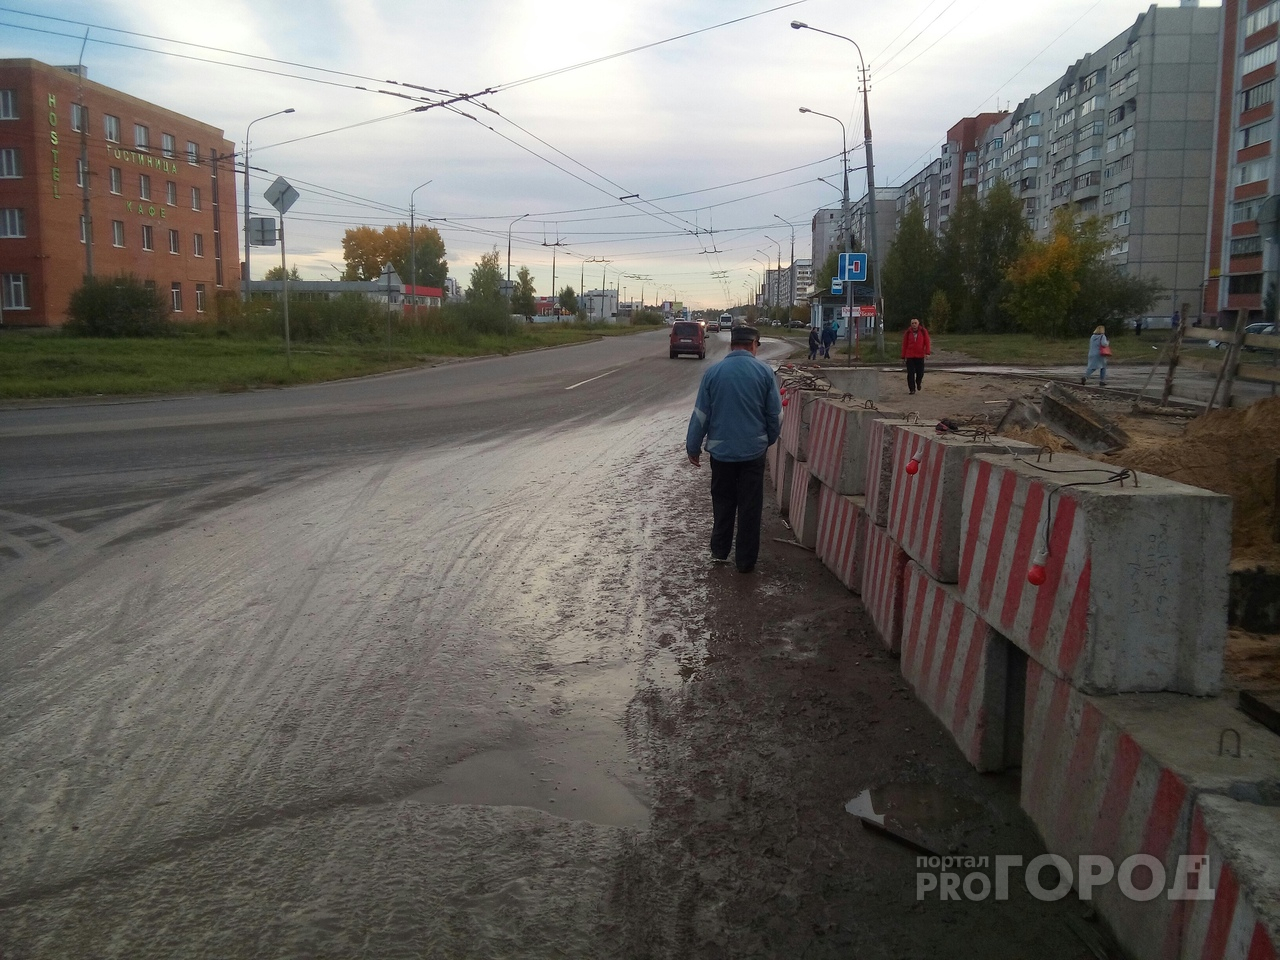 Жалоба Путину на дорогу в Йошкар-Оле: "В грязь "кинули" поддоны, чтобы хоть как-то пройти"